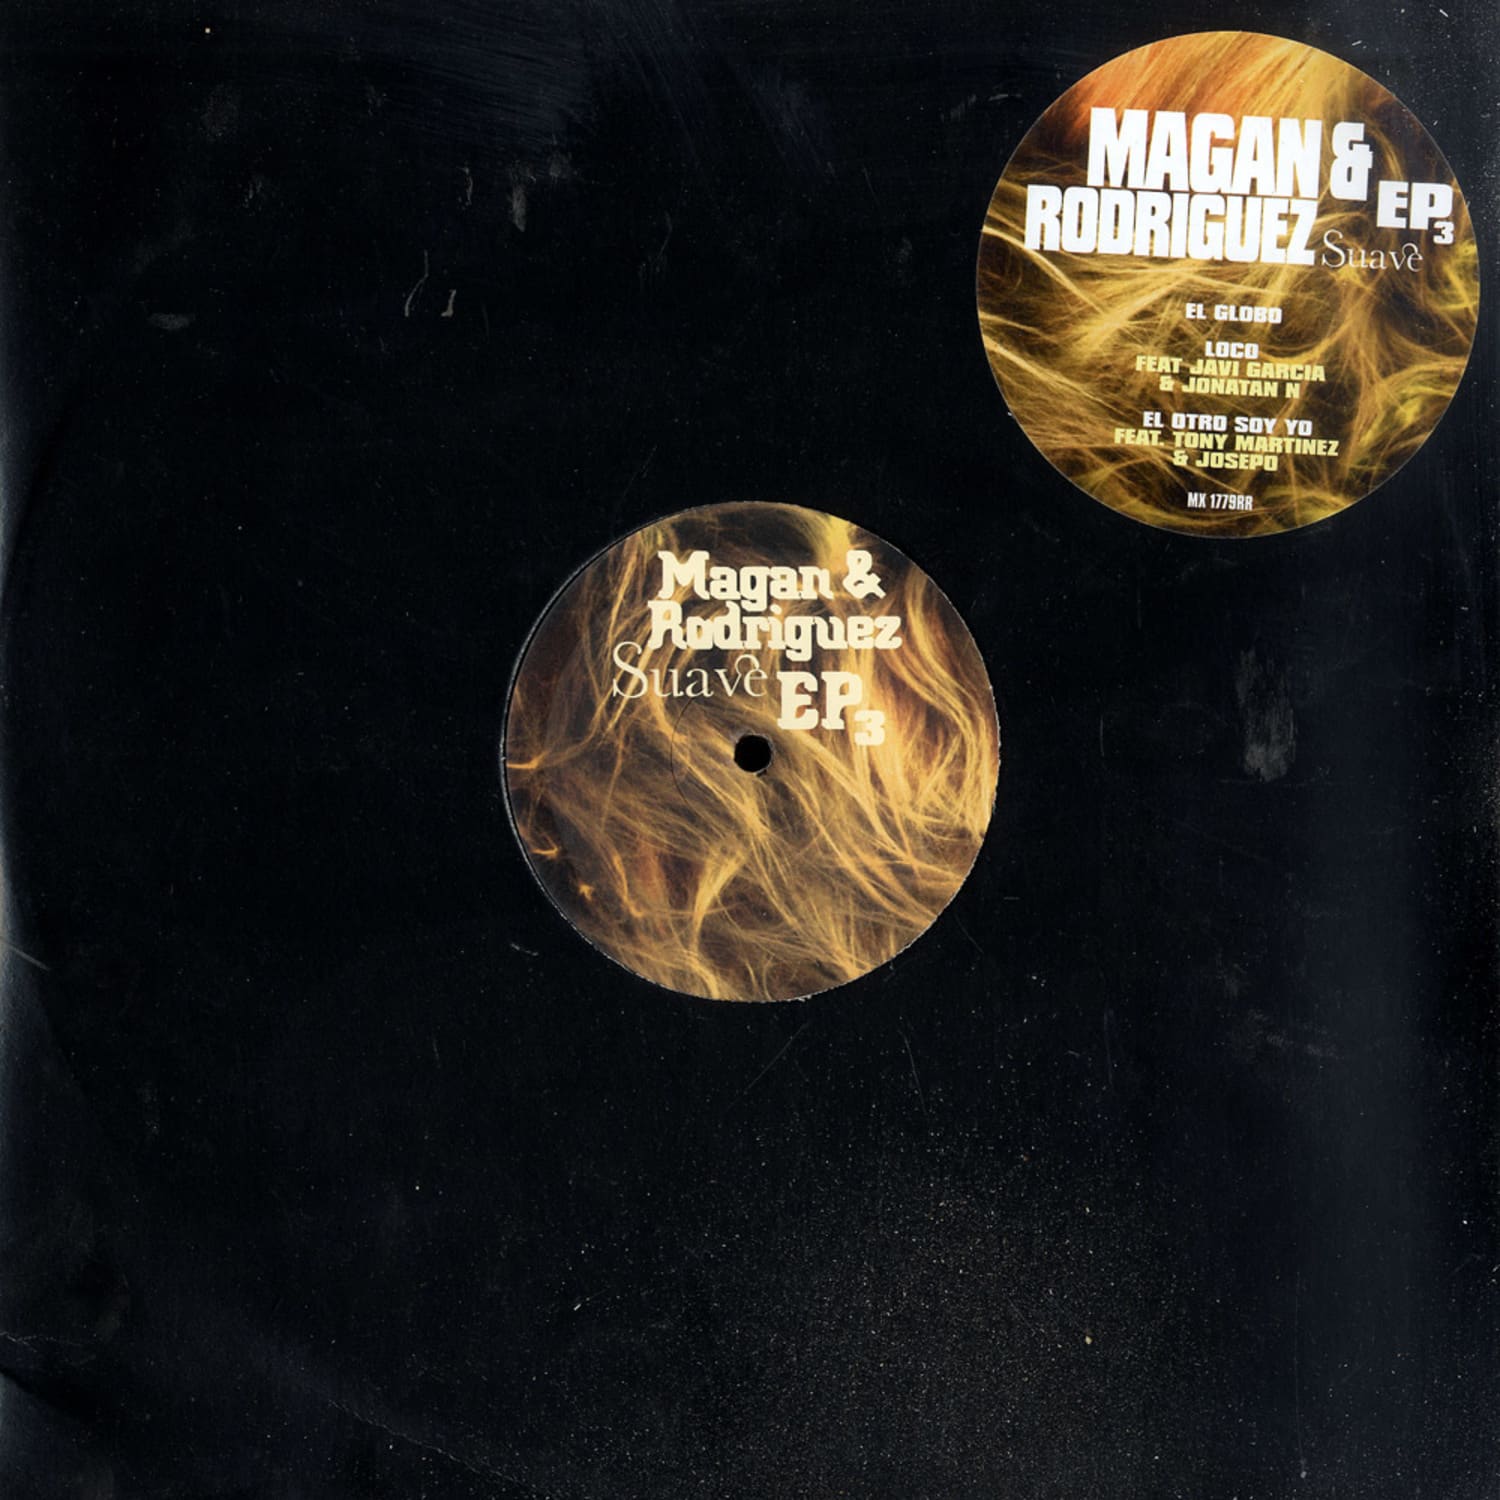 Magan & Rodriguez - SUAVE EP 3